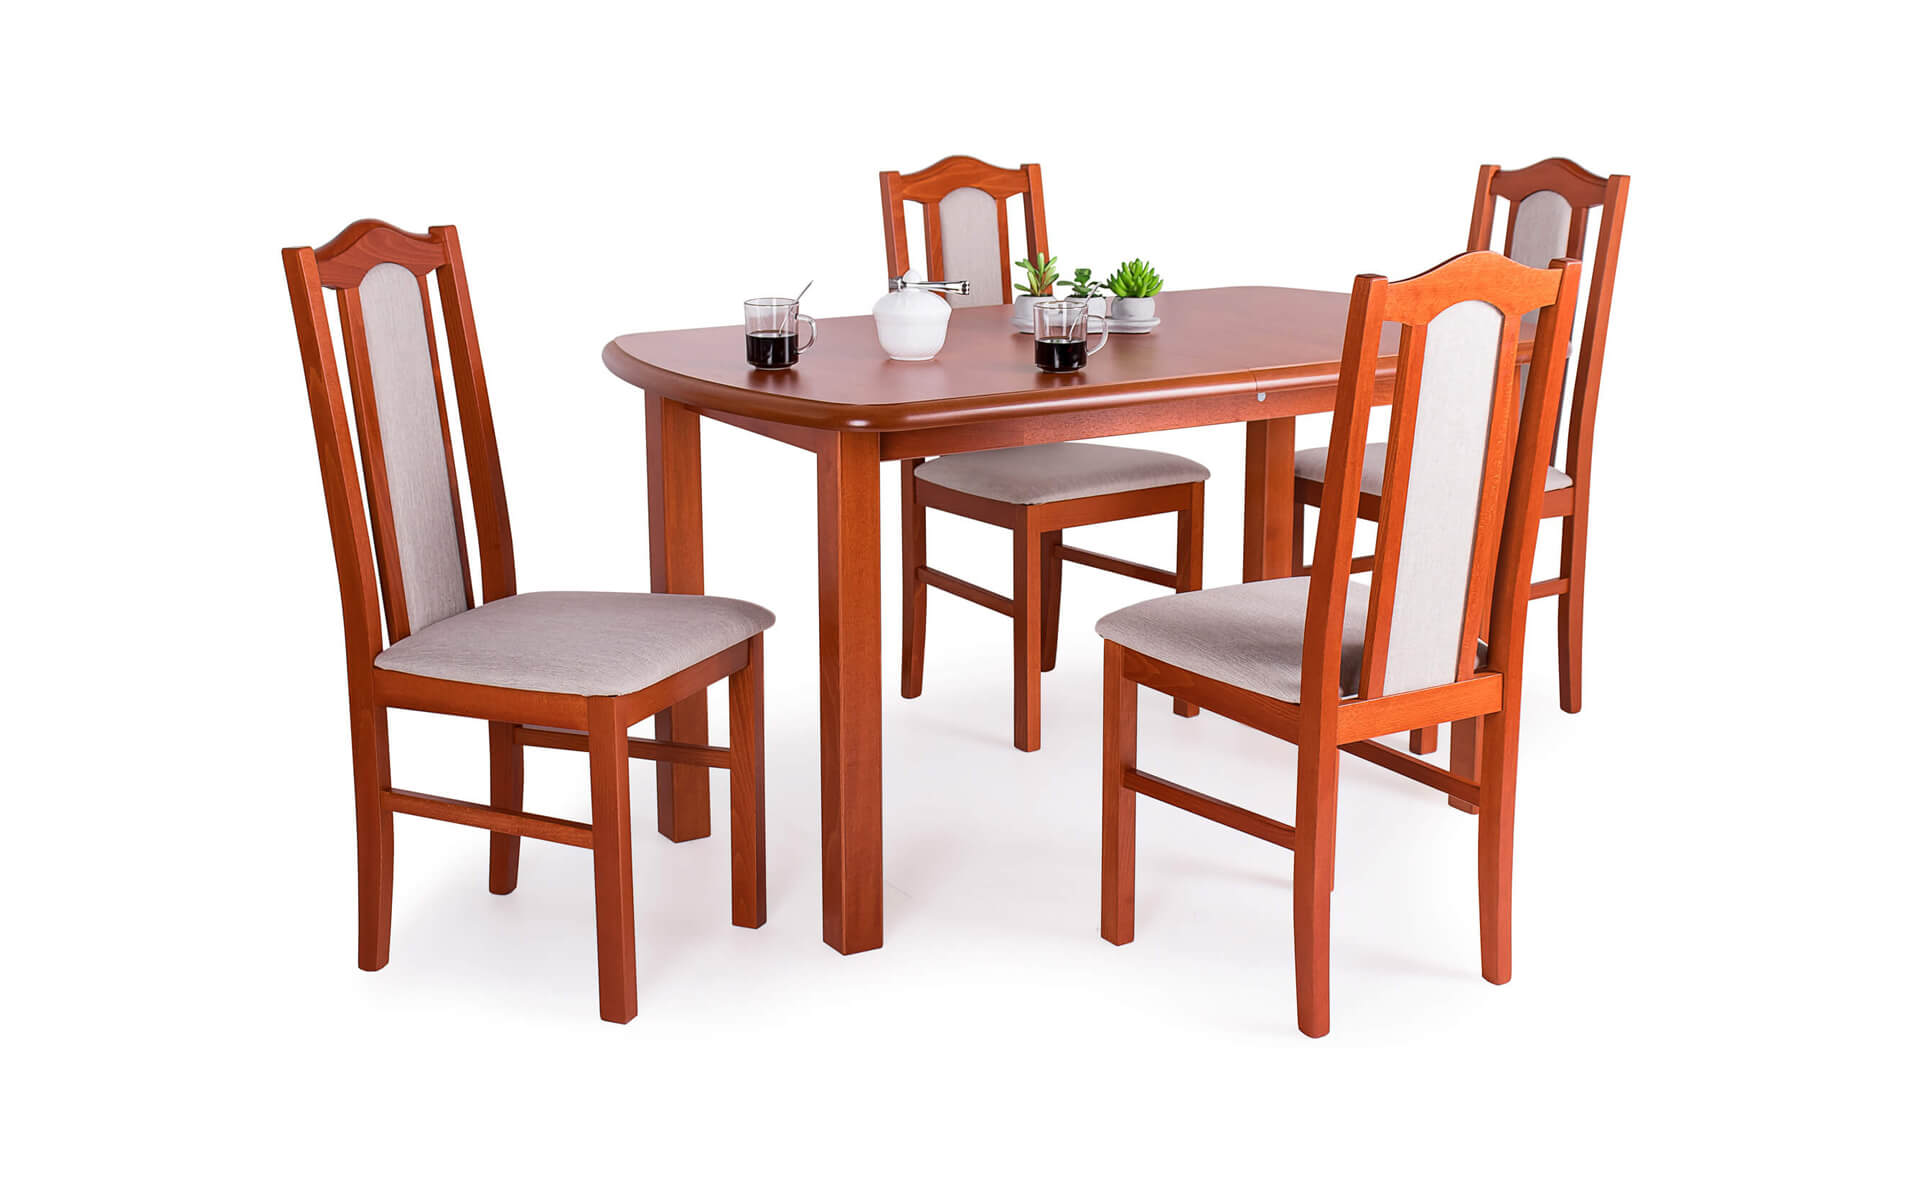 Dante asztal London székekkel | 4 személyes étkezőgarnitúra